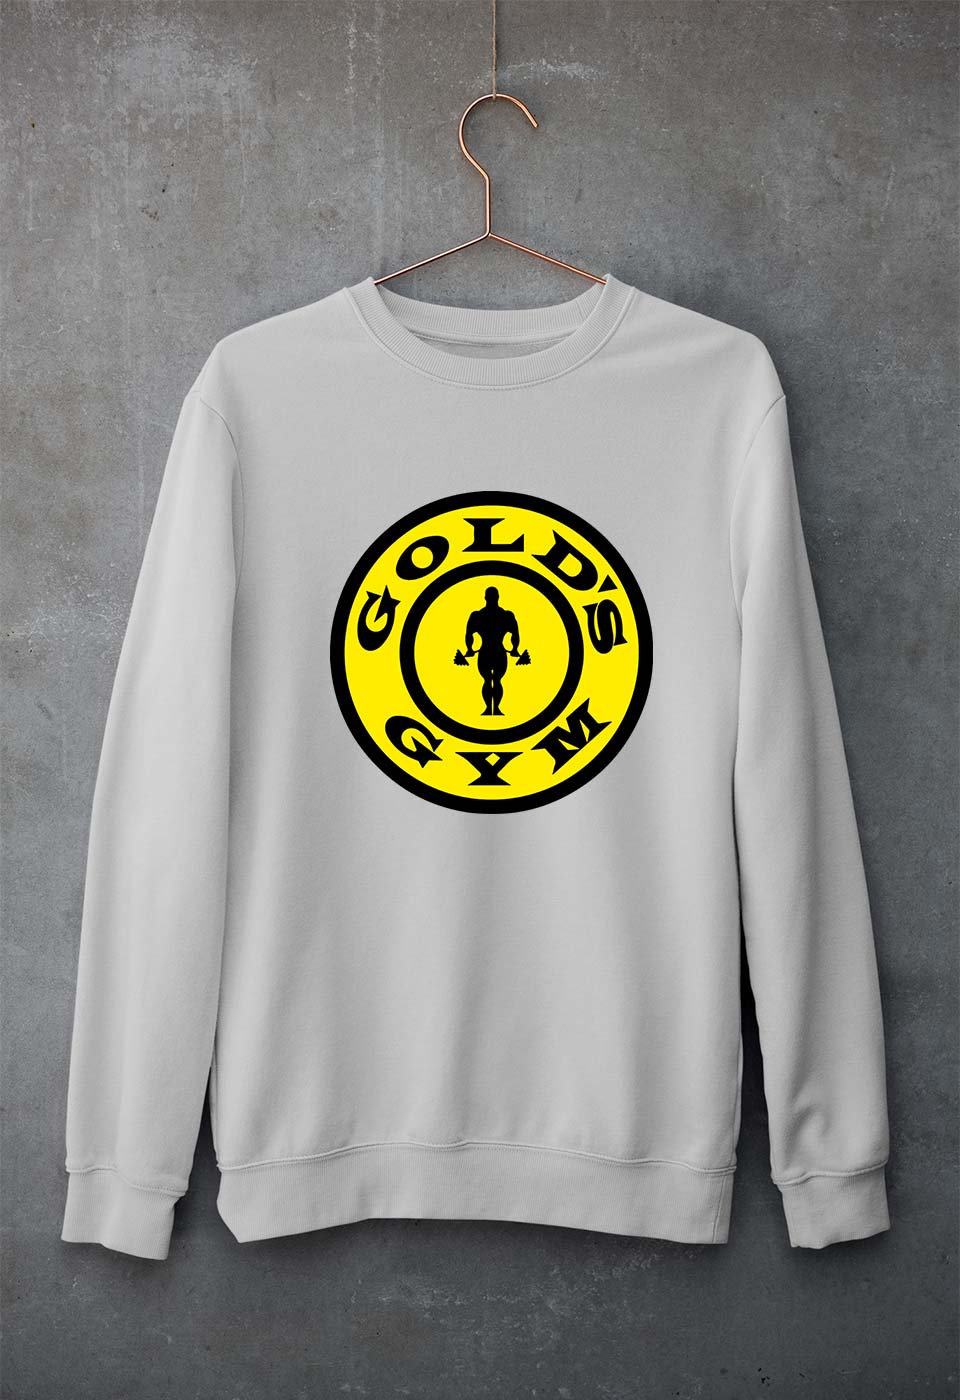 Gold's Gym Unisex Sweatshirt for Men/Women-S(40 Inches)-Grey Melange-Ektarfa.online